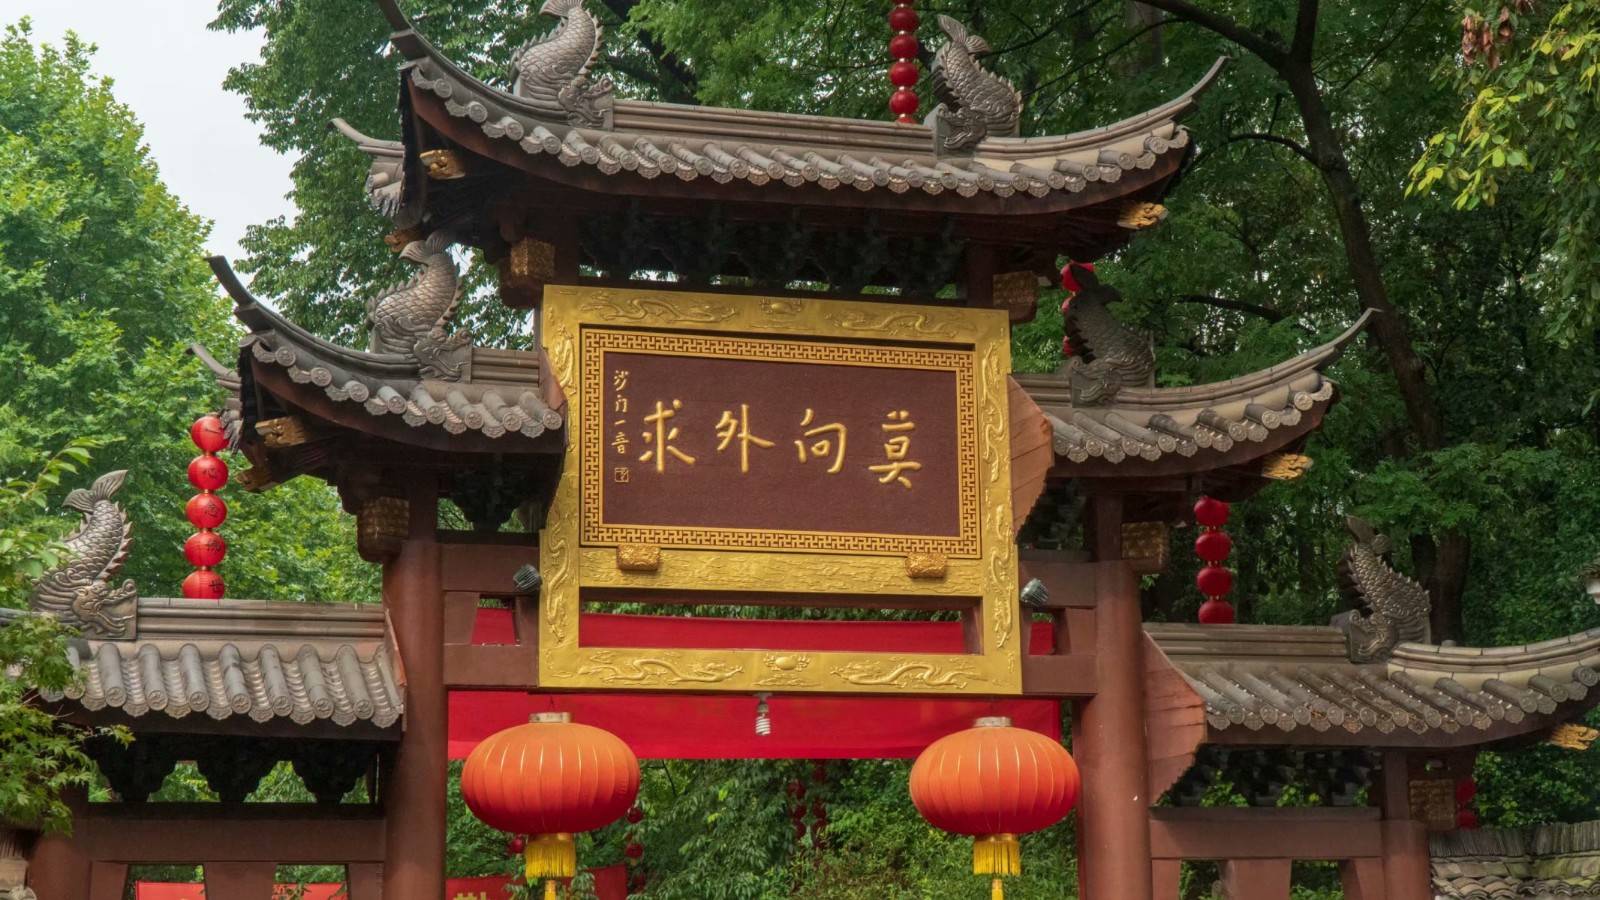 相对于游客众多的灵隐寺,杭州本地人,还是